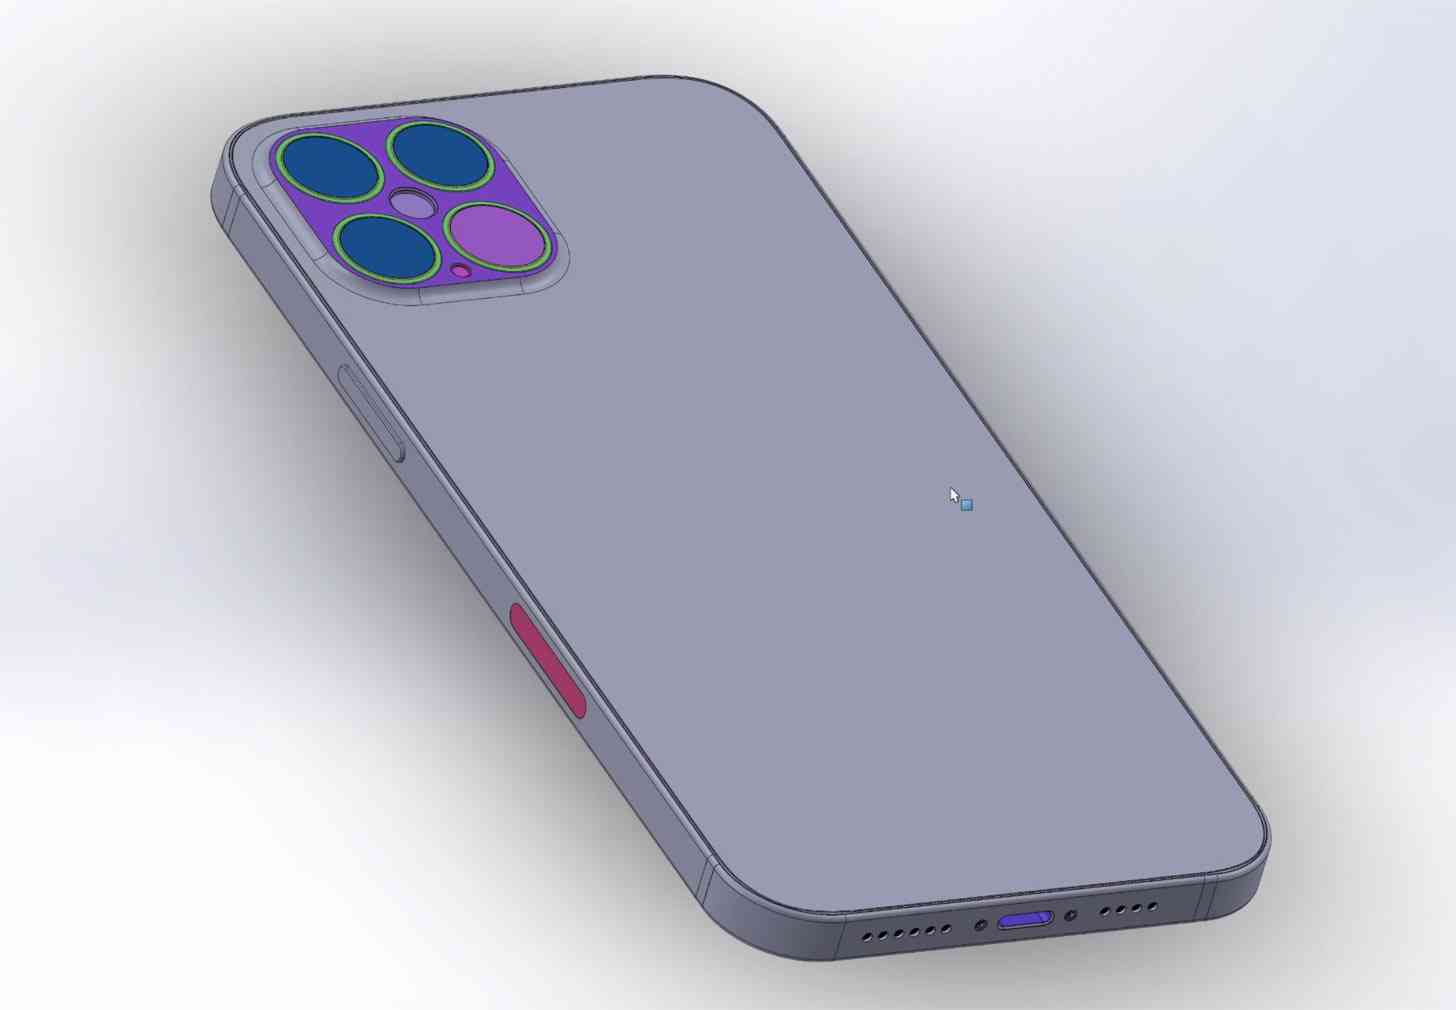 iPhone 12 Pro Max rear design CAD